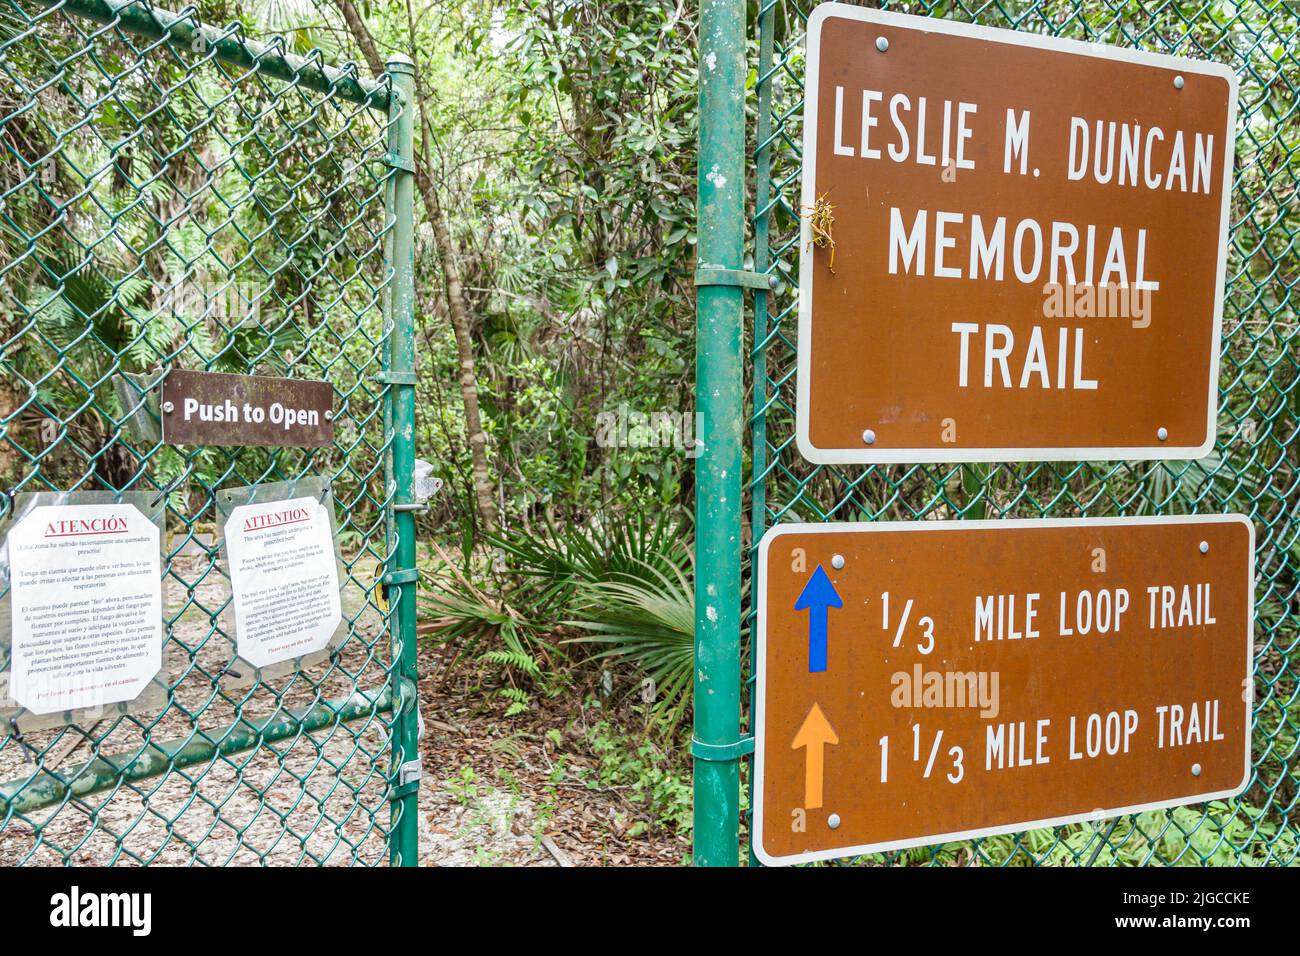 Naples Florida Everglades,Florida Panther National Wildlife refuge Leslie M. Duncan Memorial Trail porte fermée Banque D'Images